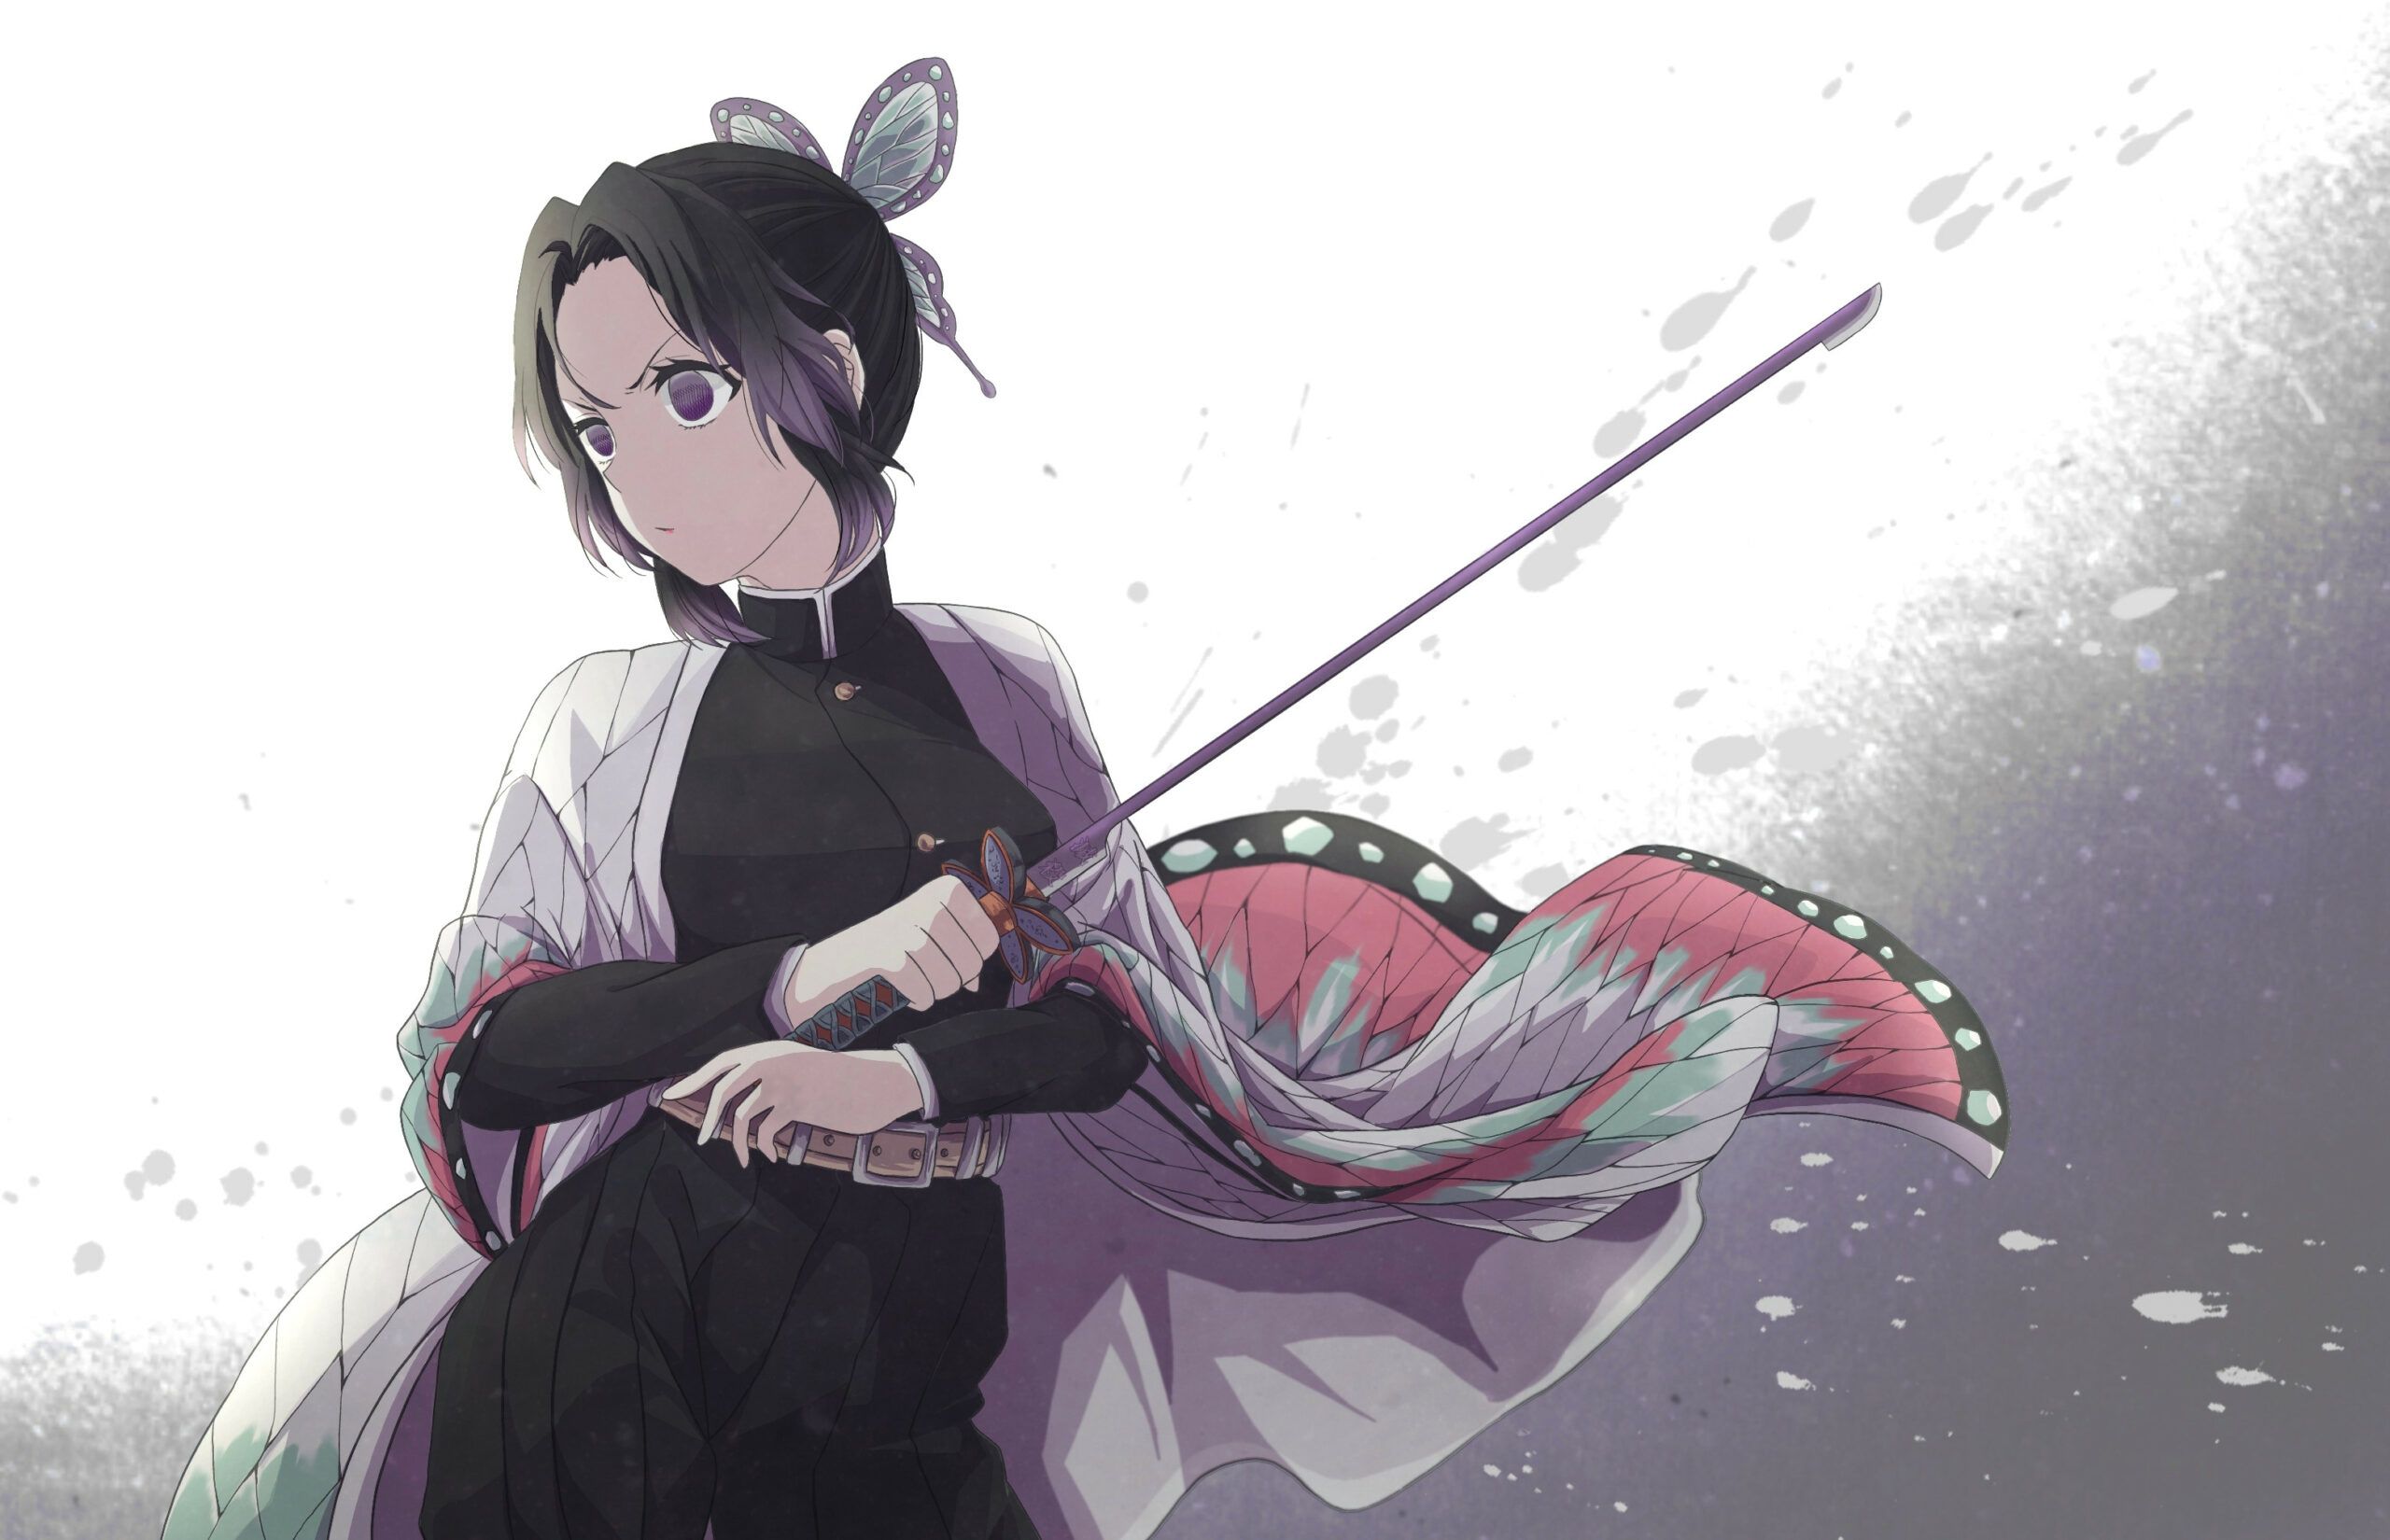 Hình nền : Anime con trai, Giyu Tomioka Kimetsu no Yaiba, Nước, mắt xanh,  thanh kiếm, Katana 3508x2480 - djfonta - 1698879 - Hình nền đẹp hd -  WallHere